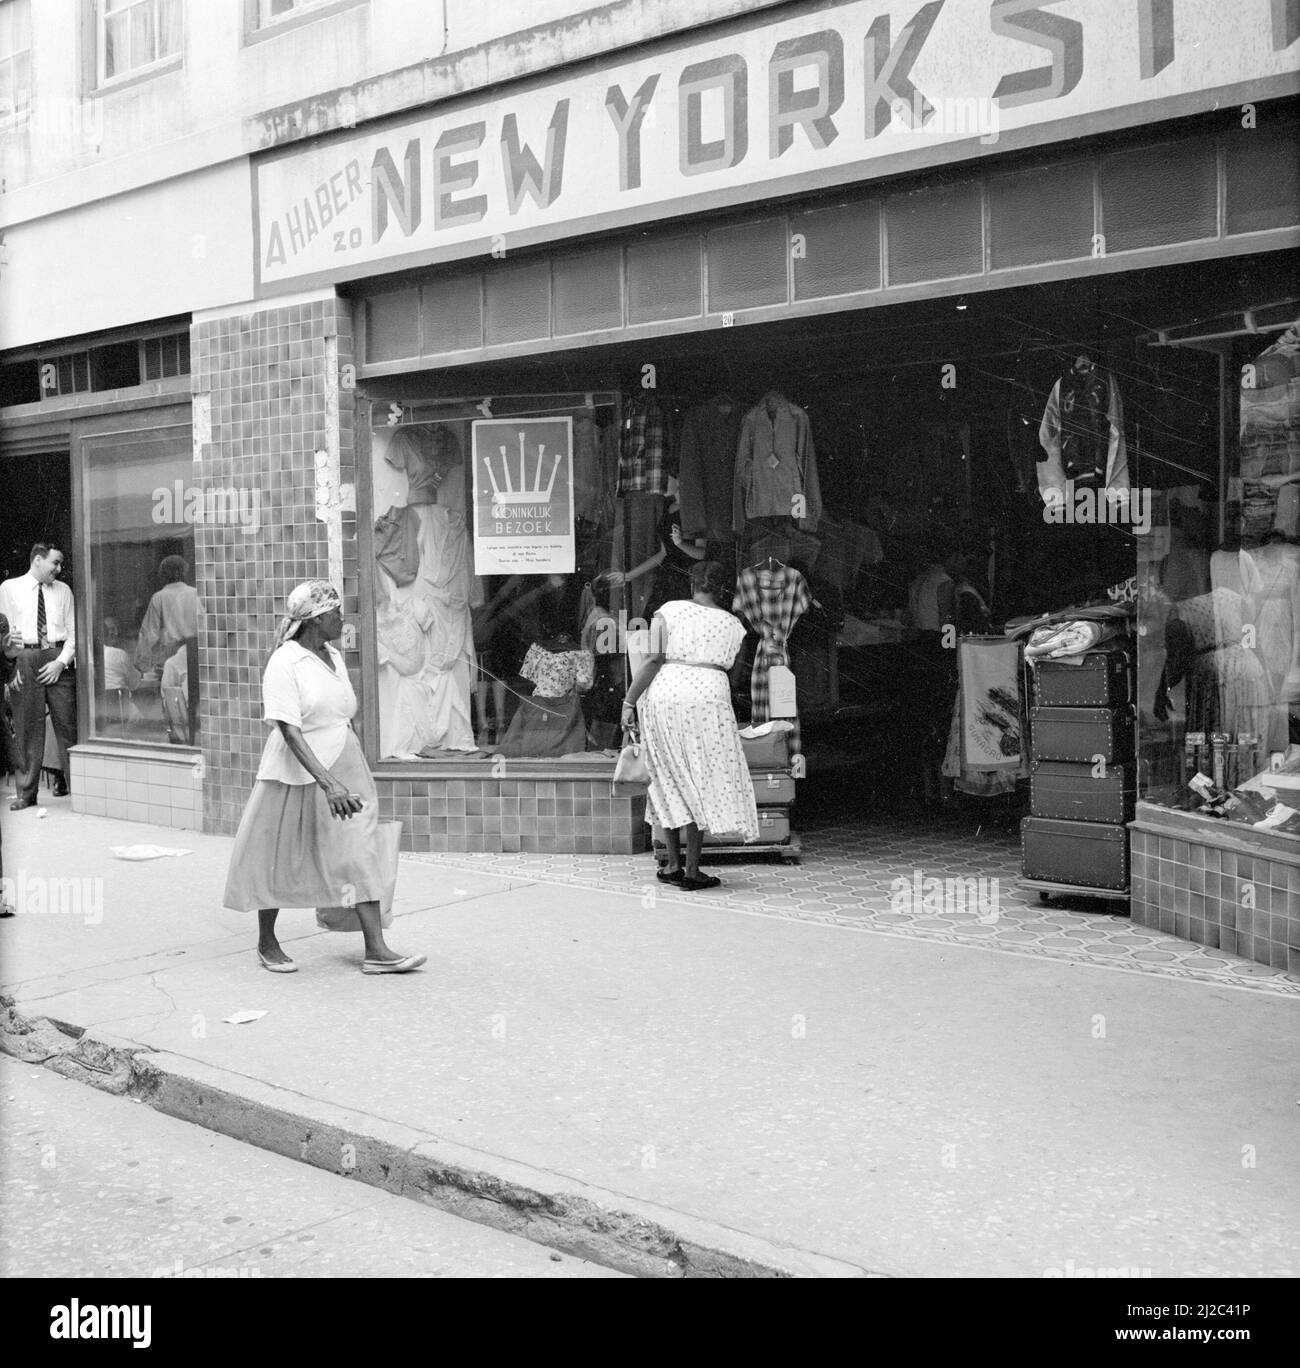 Tienda nueva york Imágenes de stock en blanco y negro - Alamy